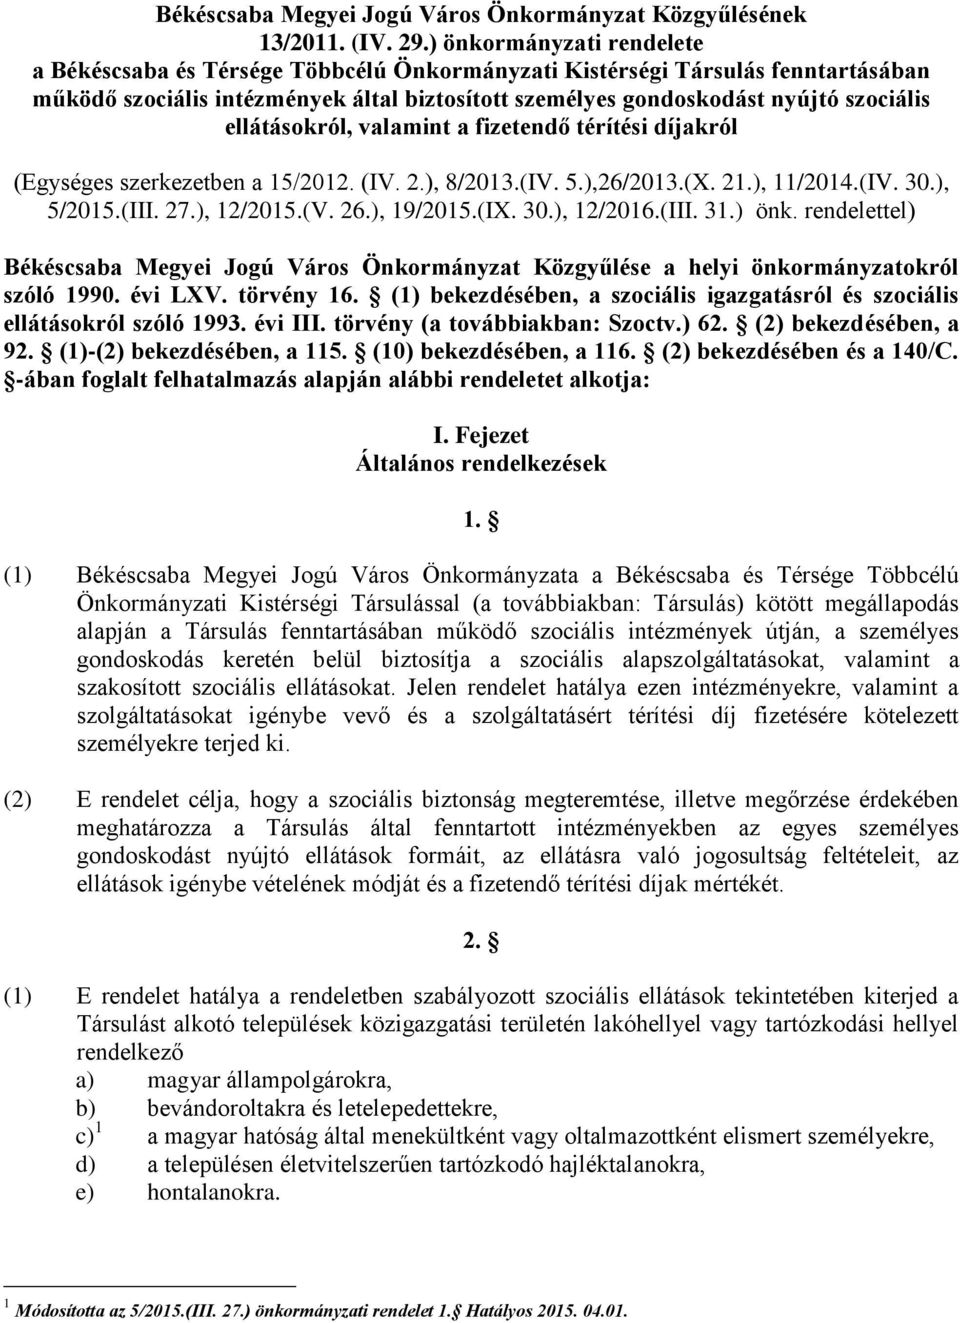 ellátásokról, valamint a fizetendő térítési díjakról (Egységes szerkezetben a 15/2012. (IV. 2.), 8/2013.(IV. 5.),26/2013.(X. 21.), 11/2014.(IV. 30.), 5/2015.(III. 27.), 12/2015.(V. 26.), 19/2015.(IX.